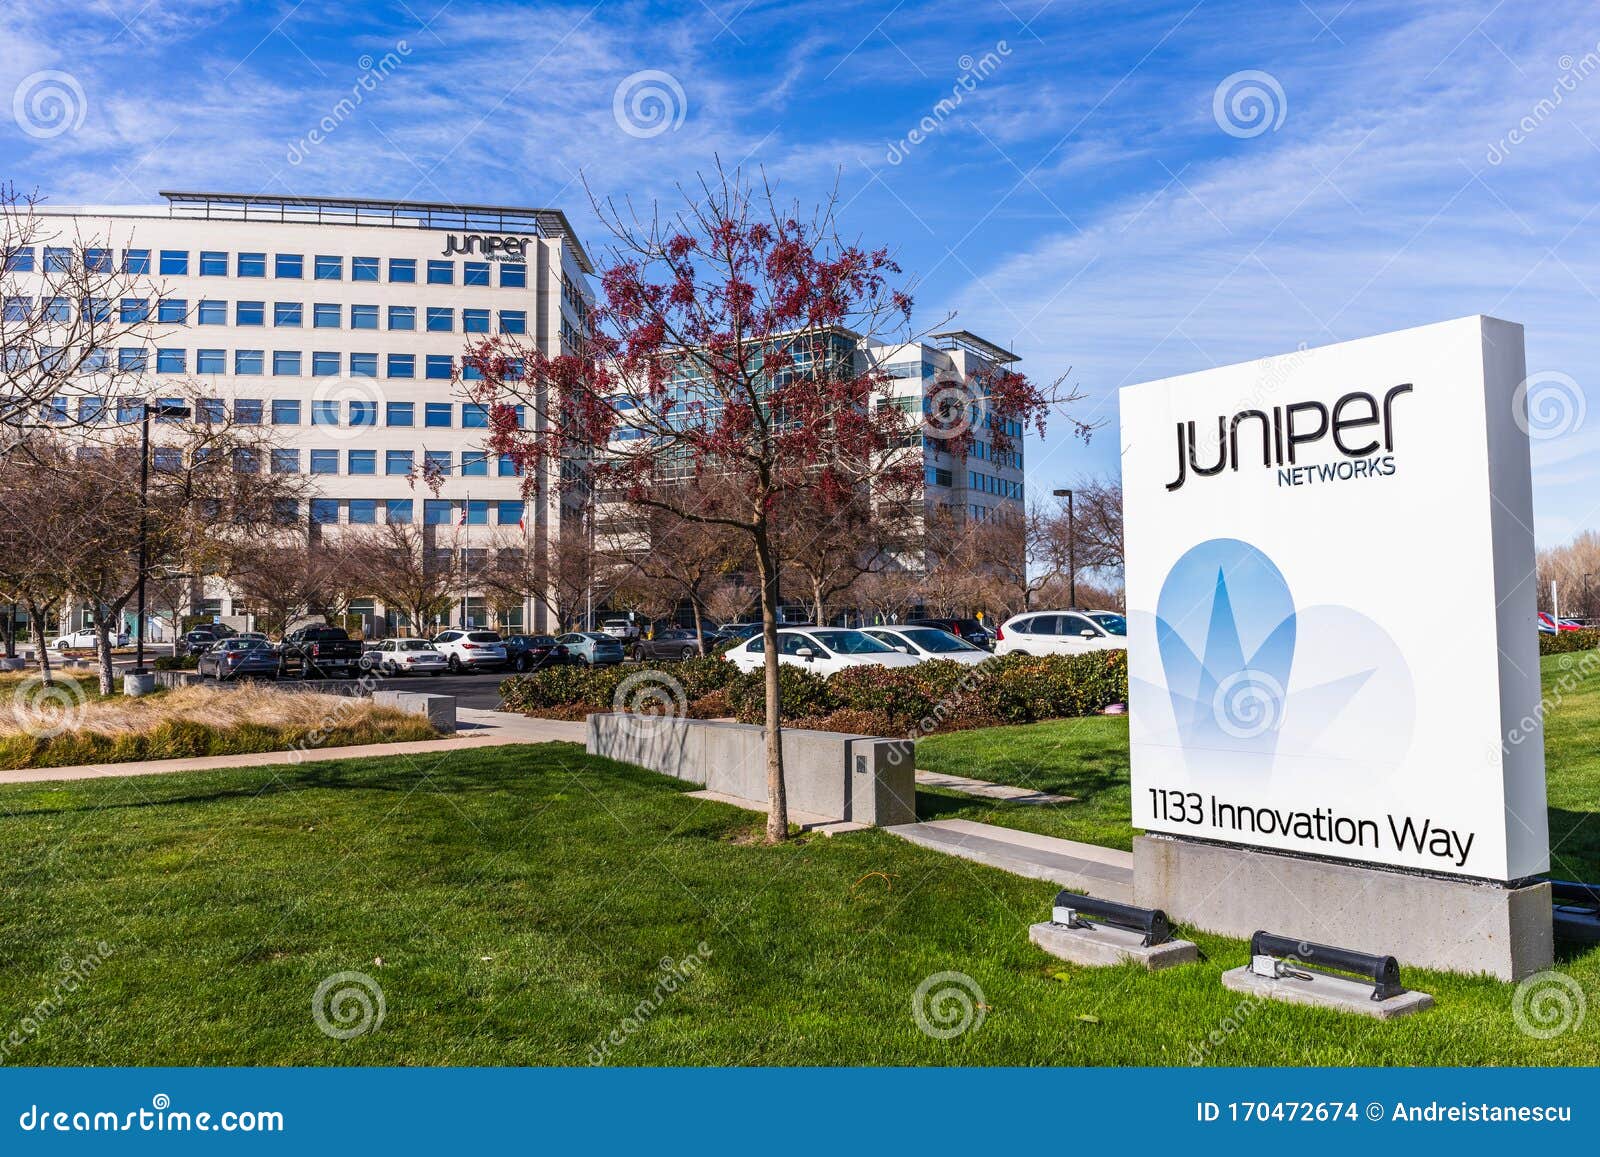 juniper networks chairman mills